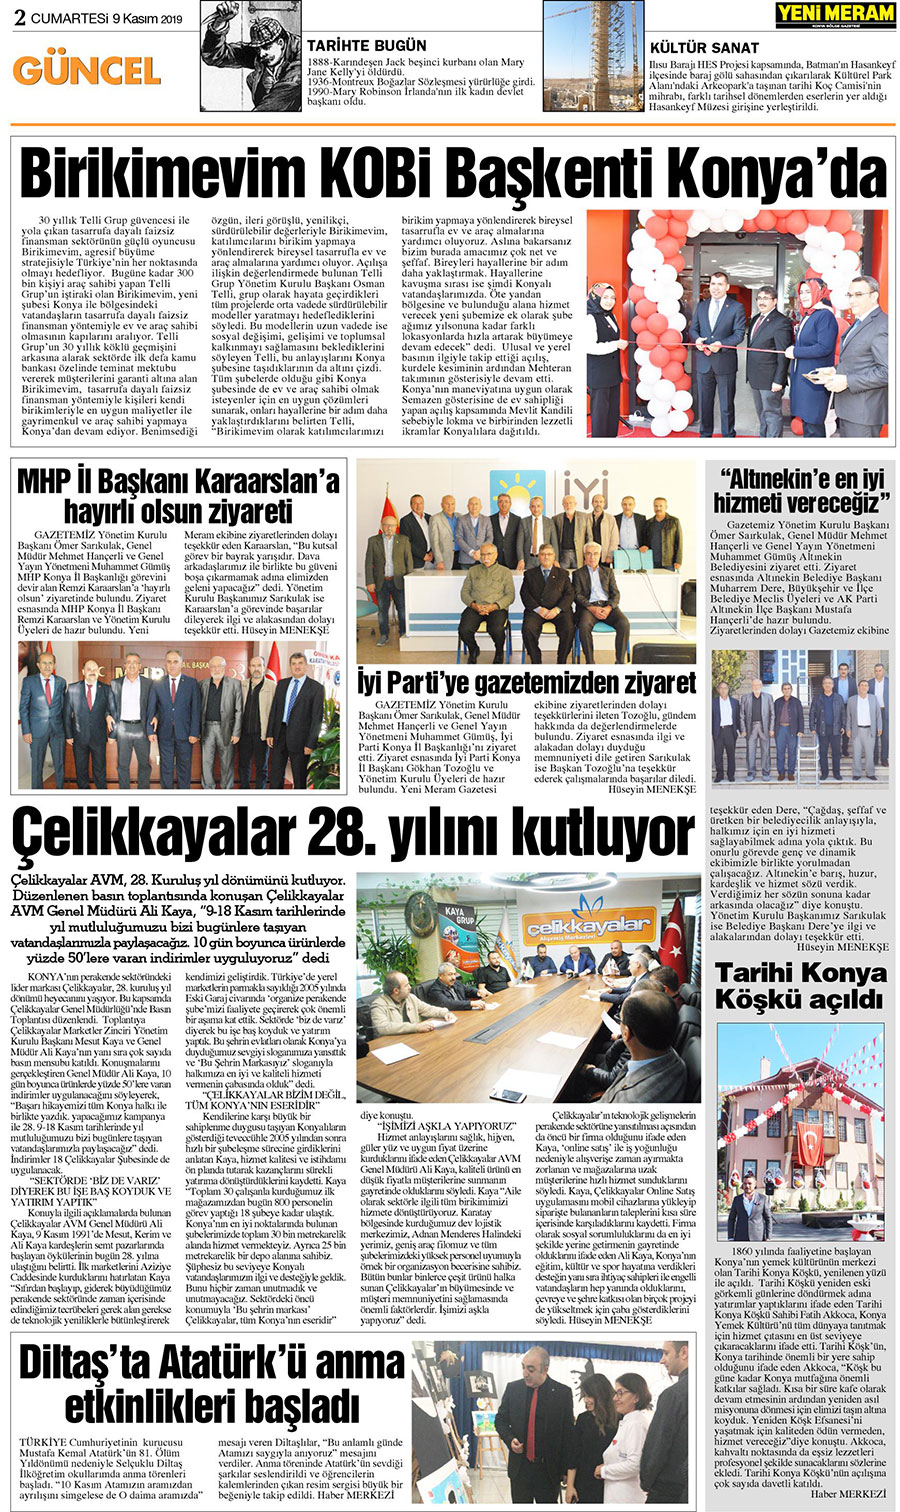 9 Kasım 2019 Yeni Meram Gazetesi